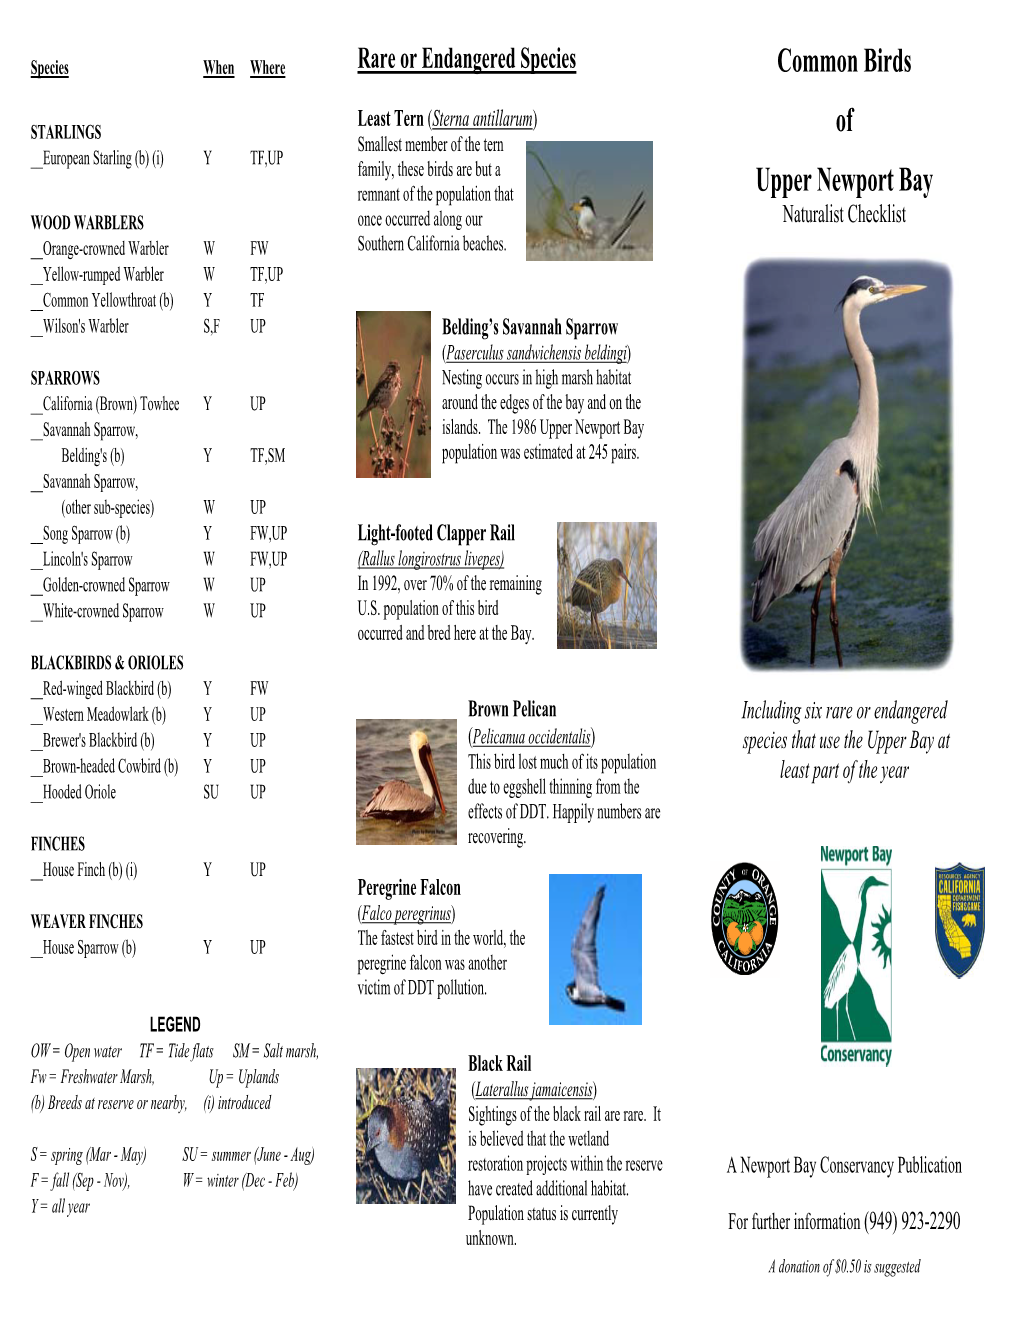 Common Birds of Upper Newport